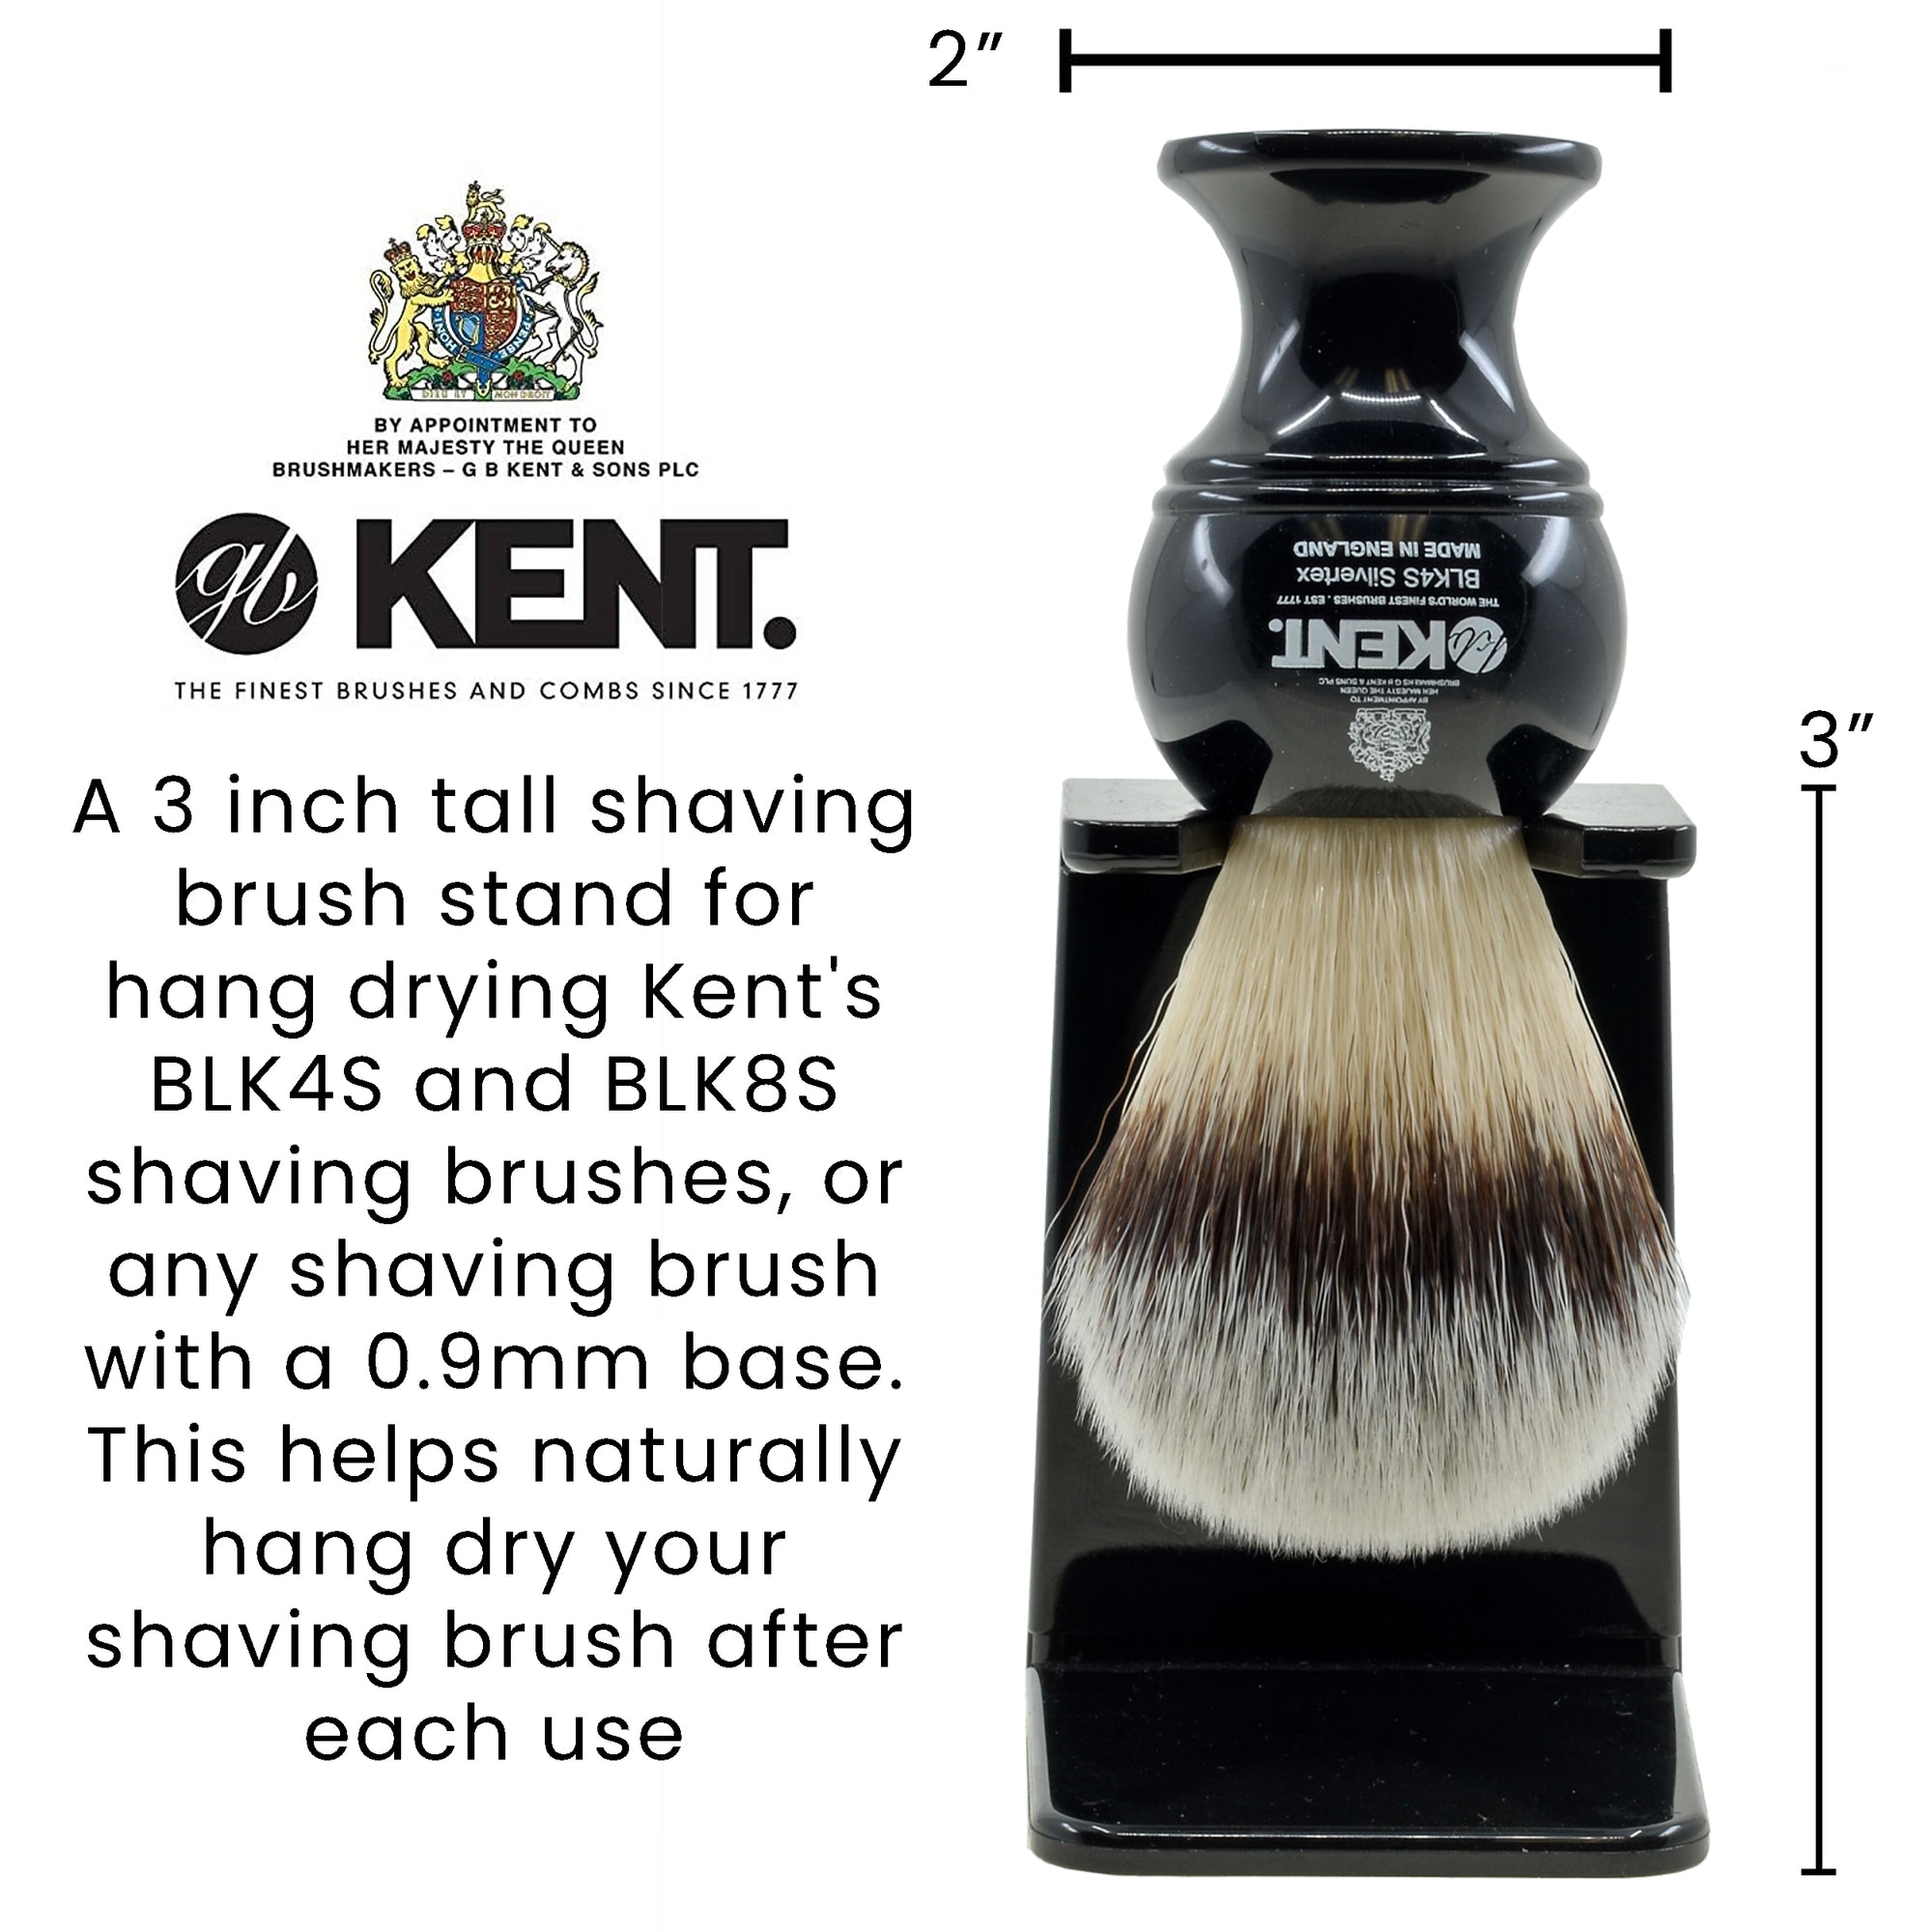 Kent VSB1 Shaving brush holder. Black Small Neck Shaving Brush Stand